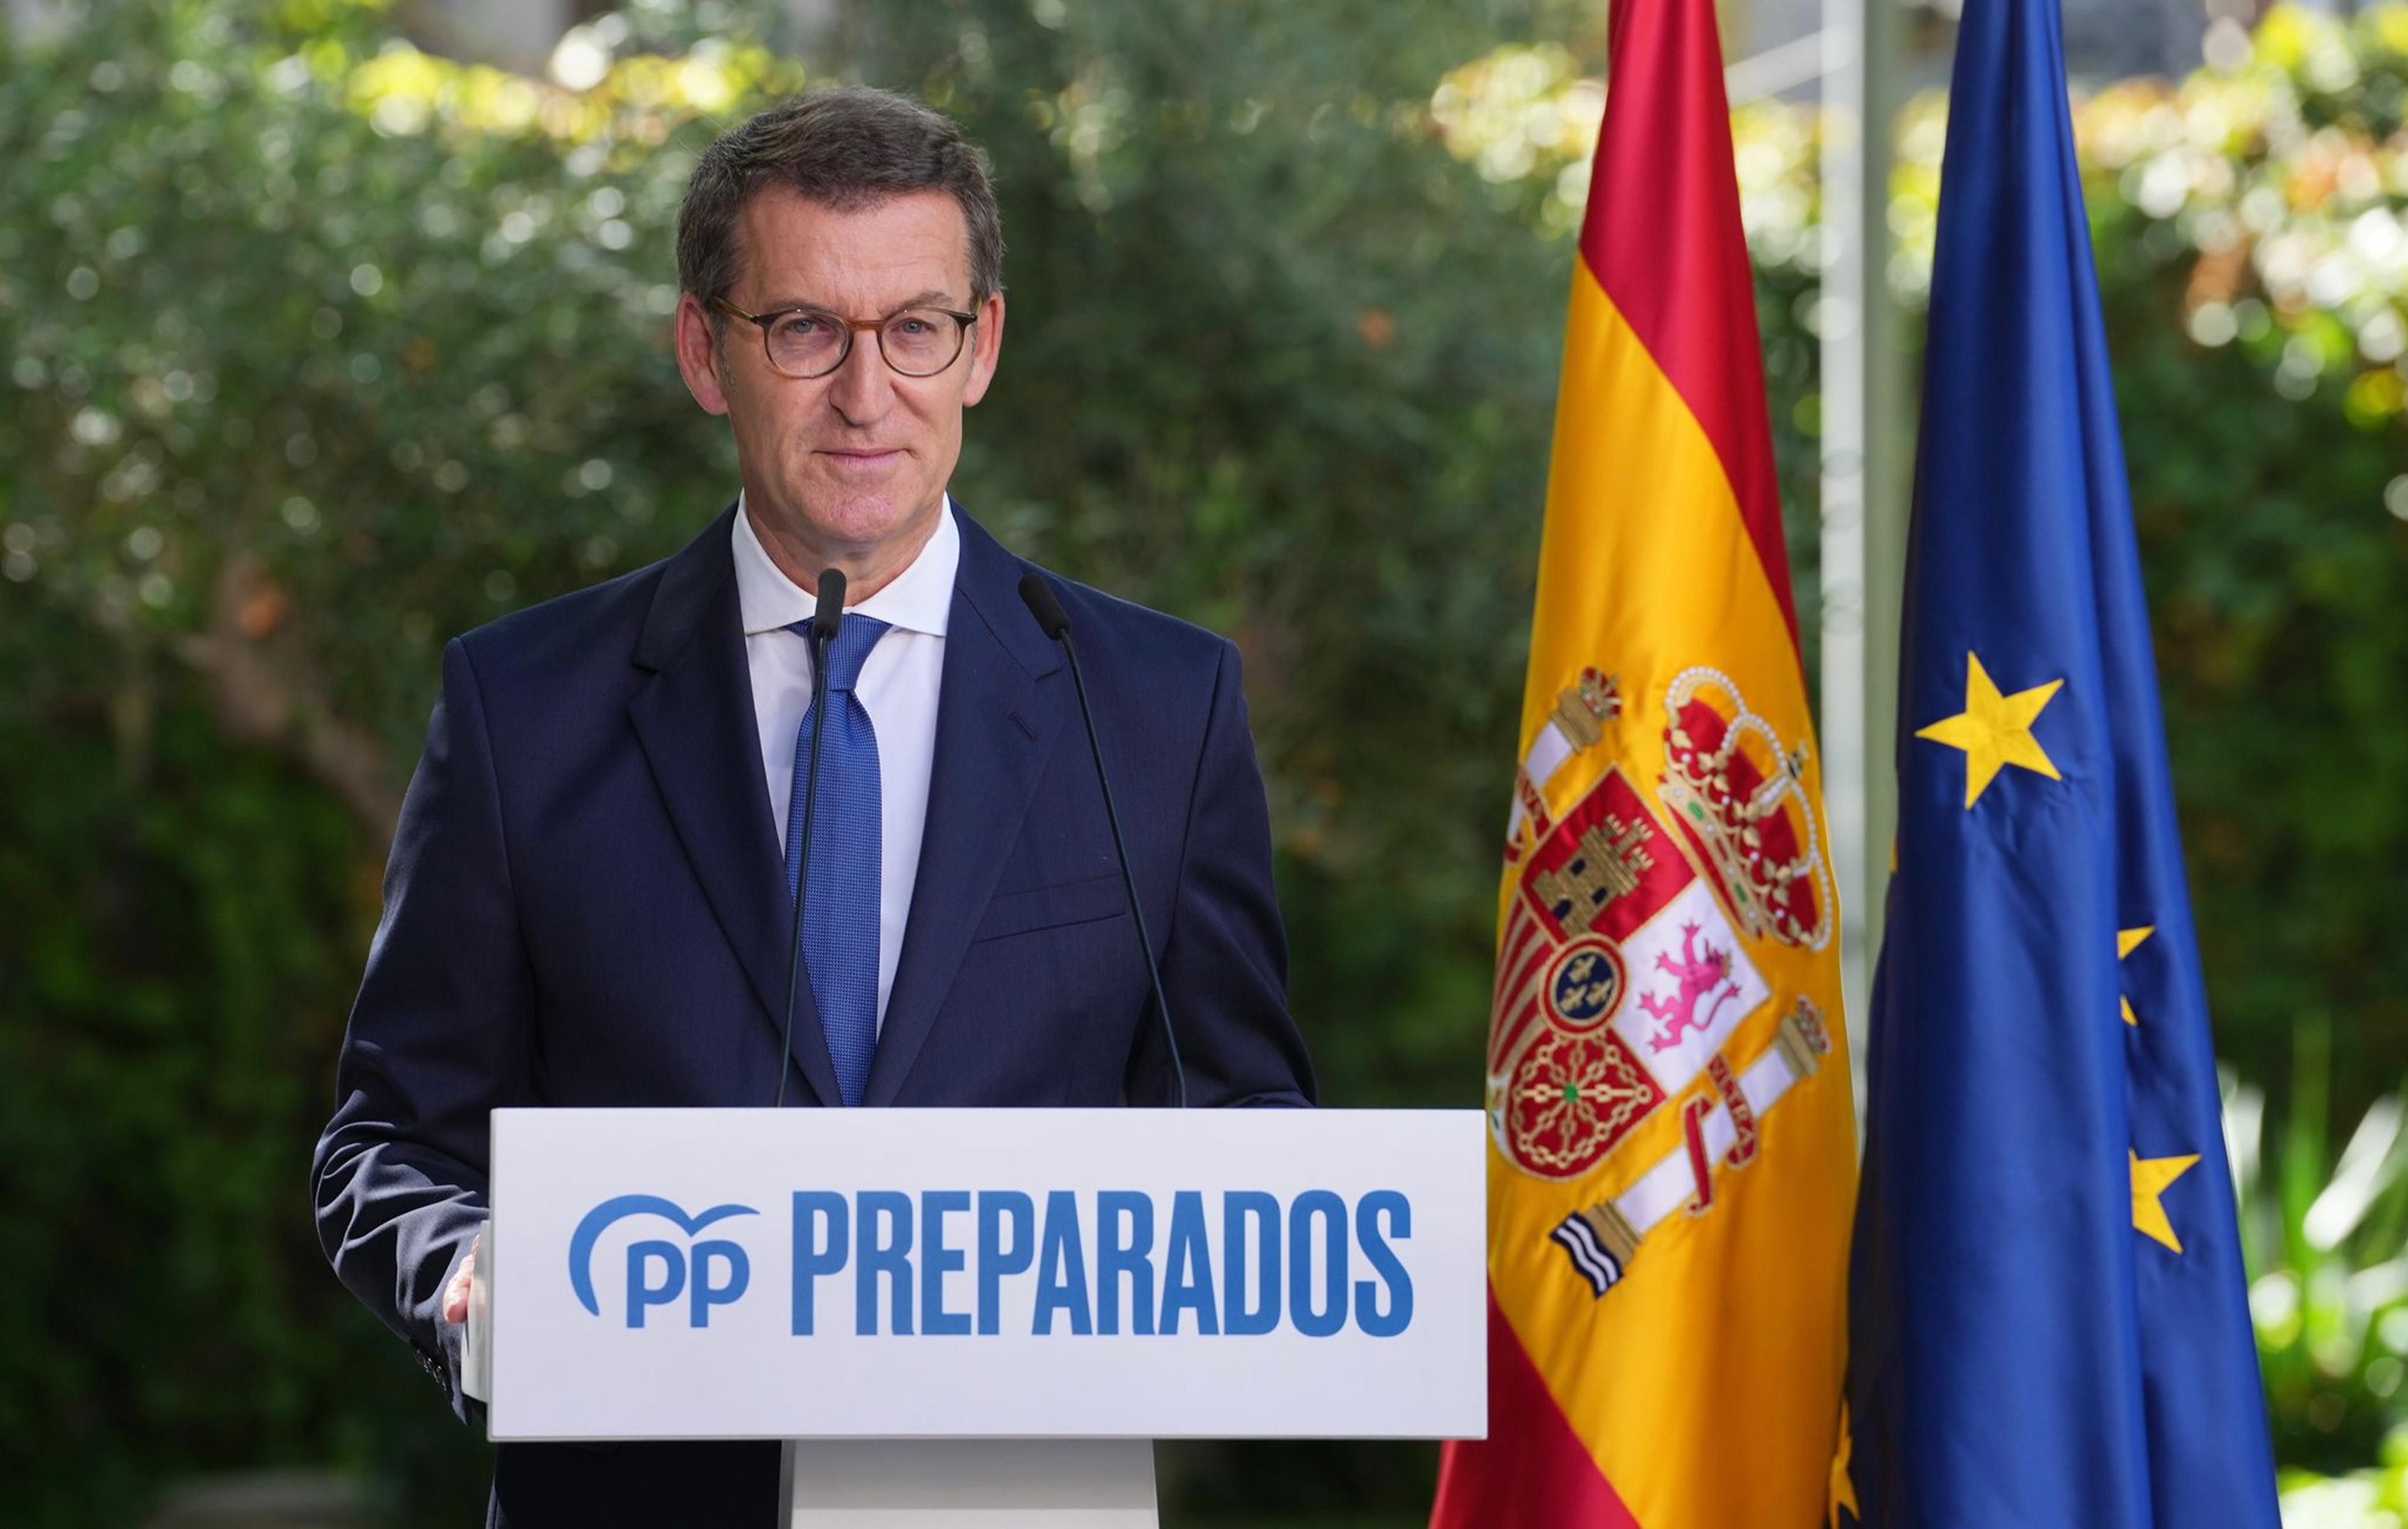 Feijóo critica Sánchez per "improvisar" el pla d'estalvi energètic i reclama una conferència de presidents